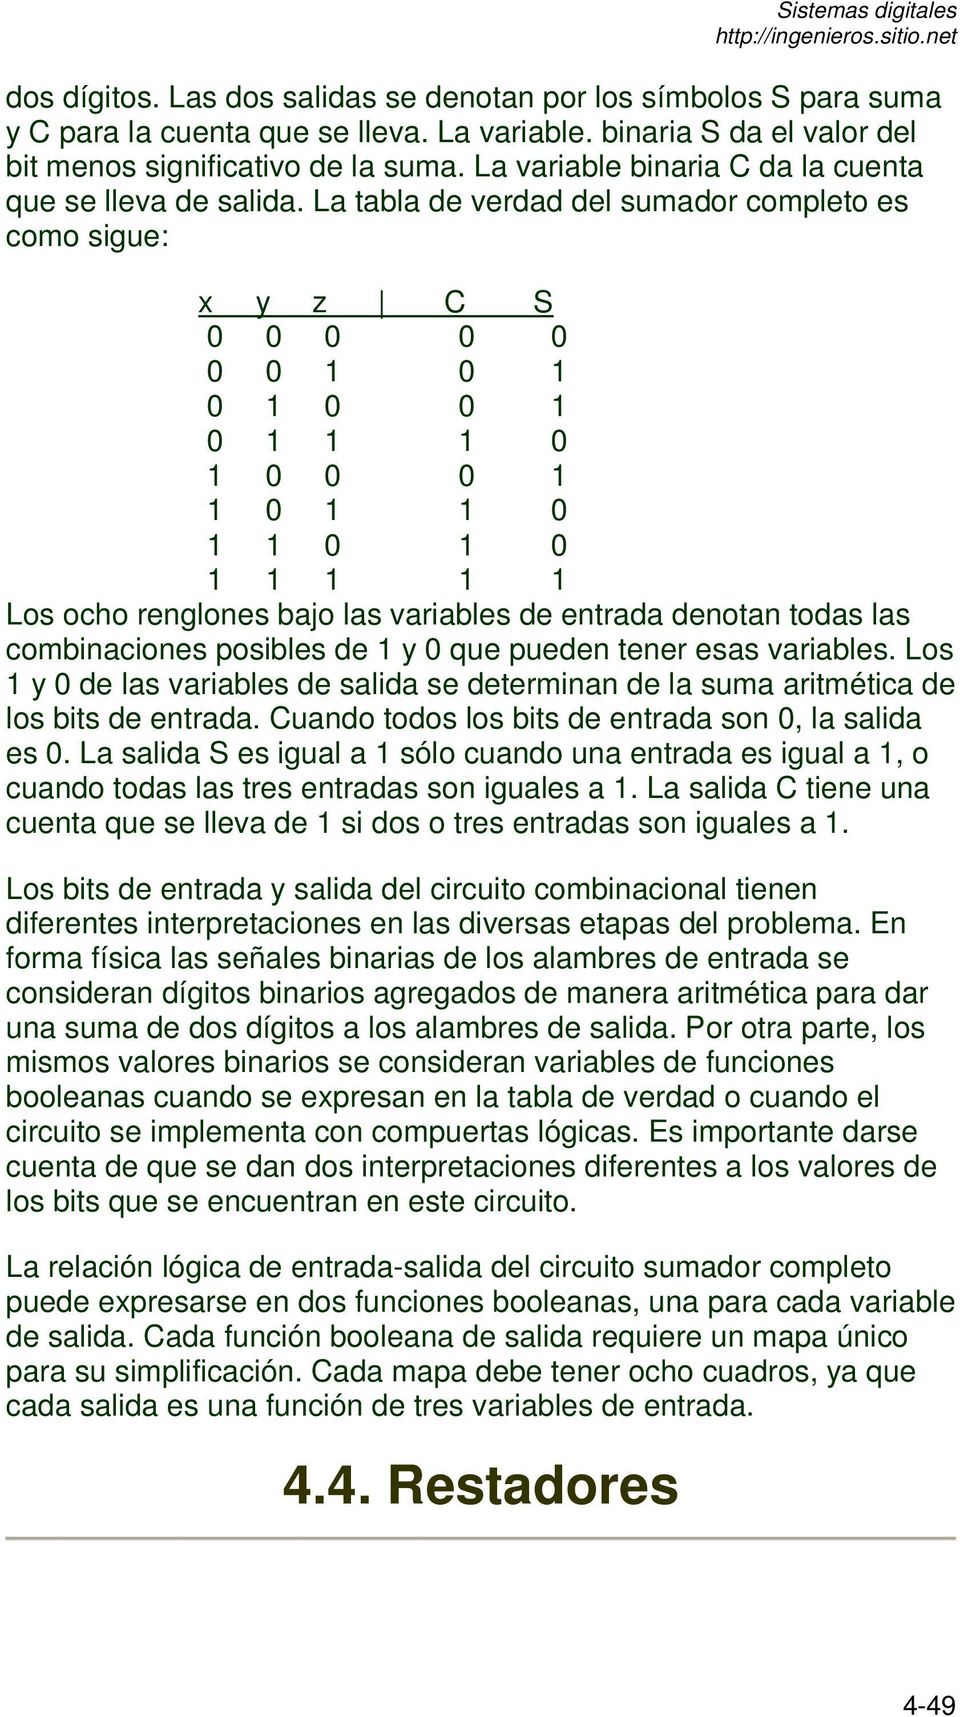 La tabla de verdad del sumador completo es como sigue: x y z C S 0 0 0 0 0 0 0 1 0 1 0 1 0 0 1 0 1 1 1 0 1 0 0 0 1 1 0 1 1 0 1 1 0 1 0 1 1 1 1 1 Los ocho renglones bajo las variables de entrada